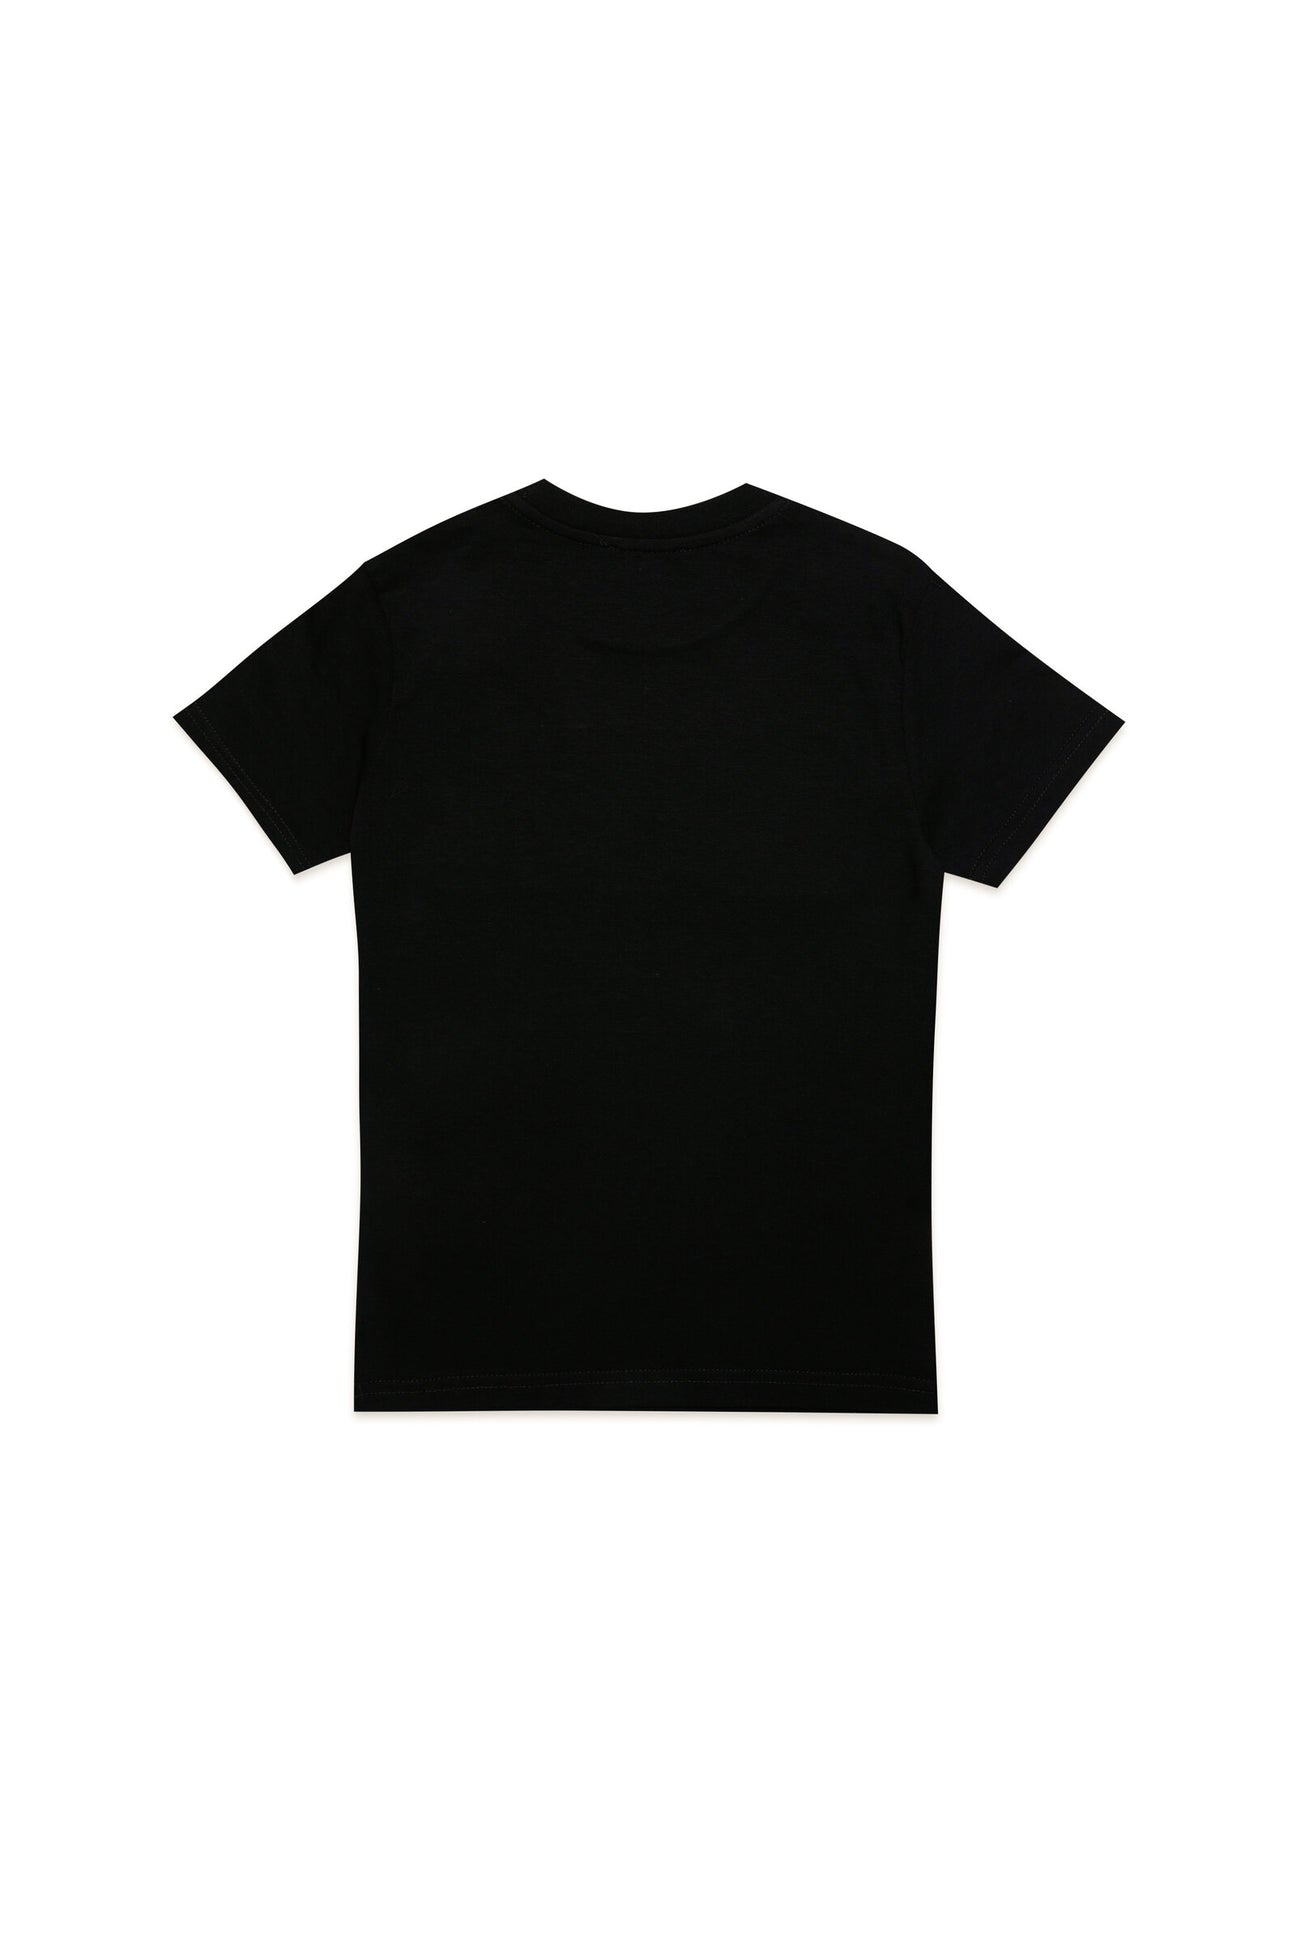 Camiseta negra con aplicación del logotipo Diesel Camiseta negra con aplicación del logotipo Diesel